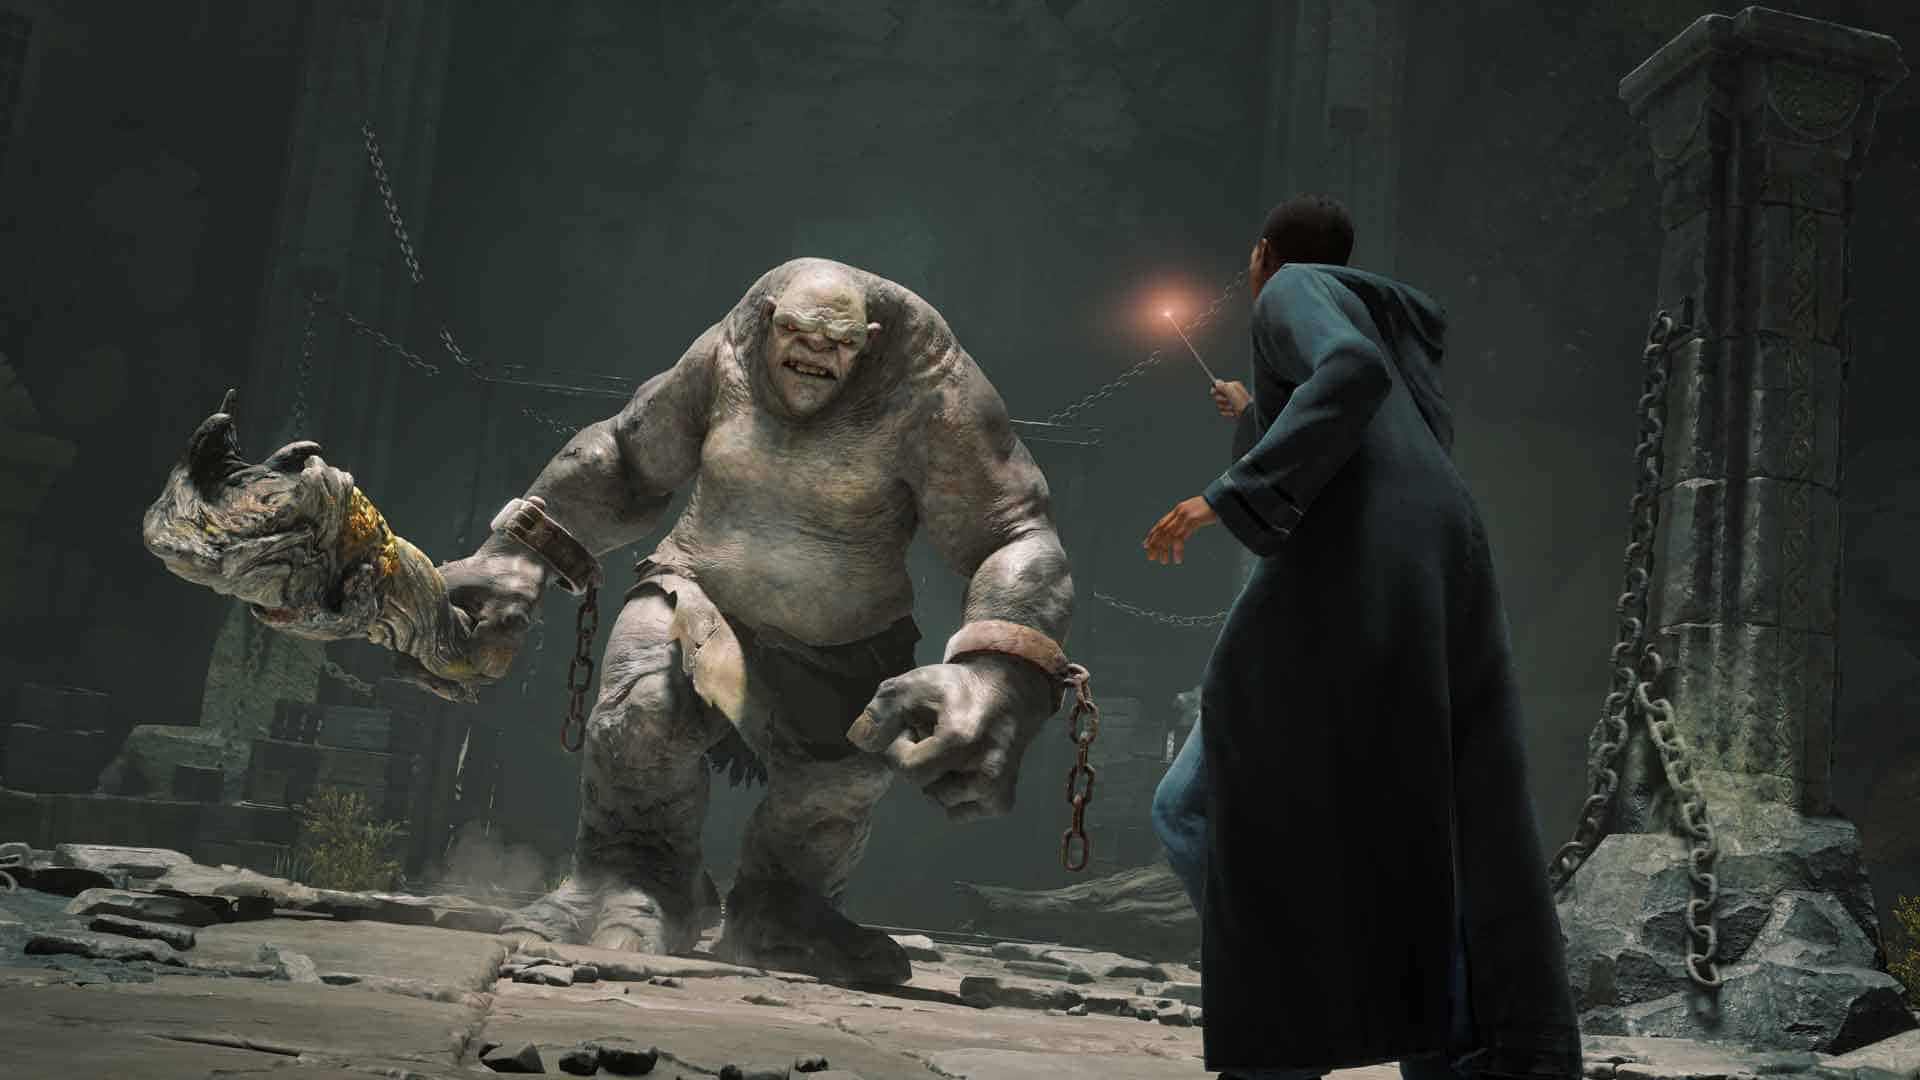 Besteshintergrundbild Von Shadow Of War: Ein Zauberer Kämpft Gegen Einen Troll.